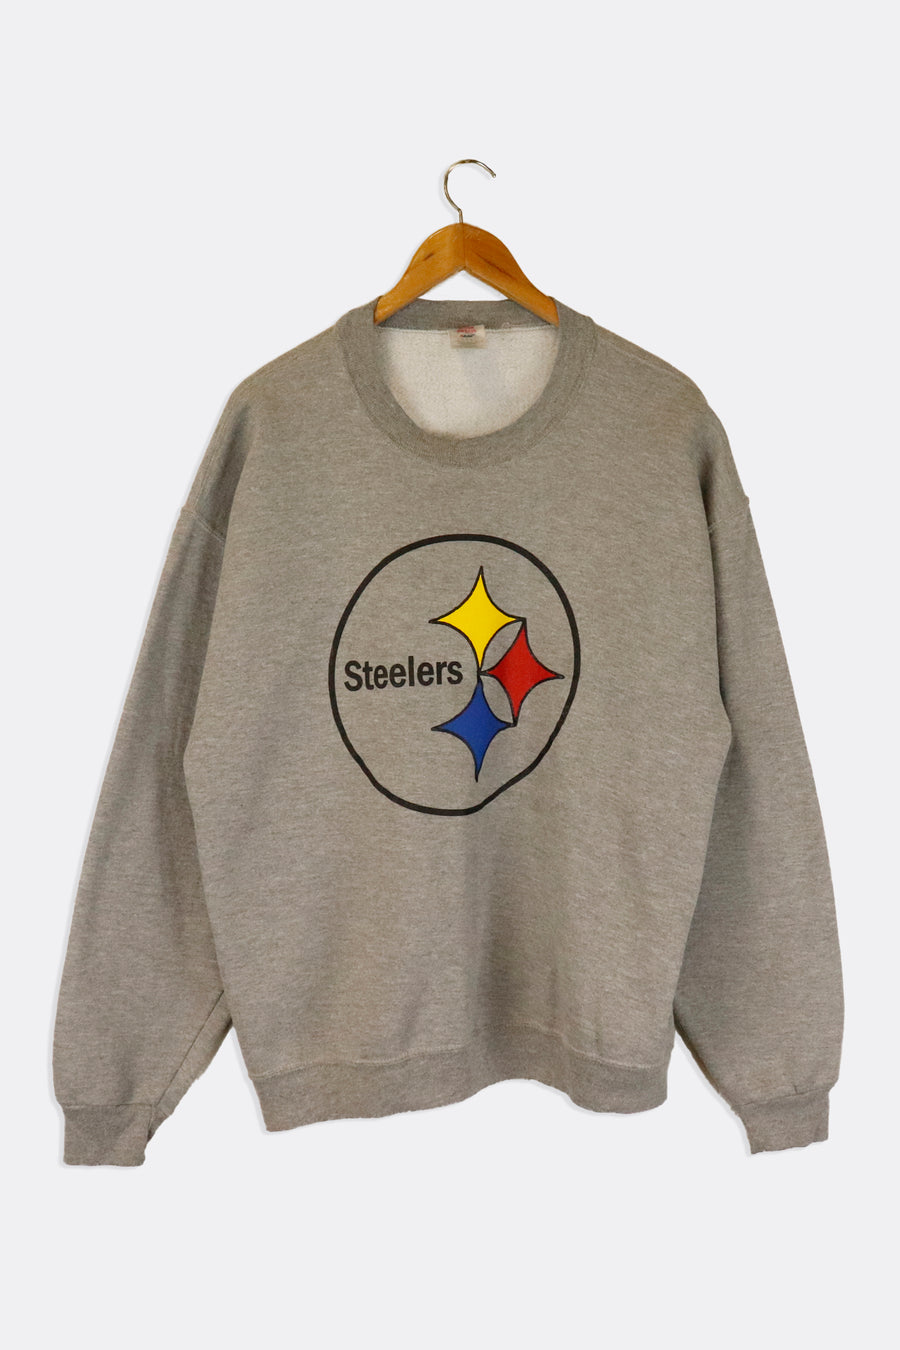 Vintage NFL Pittsburgh Steelers Simple Circle Logo Vinyl Sweatshirt Sz L